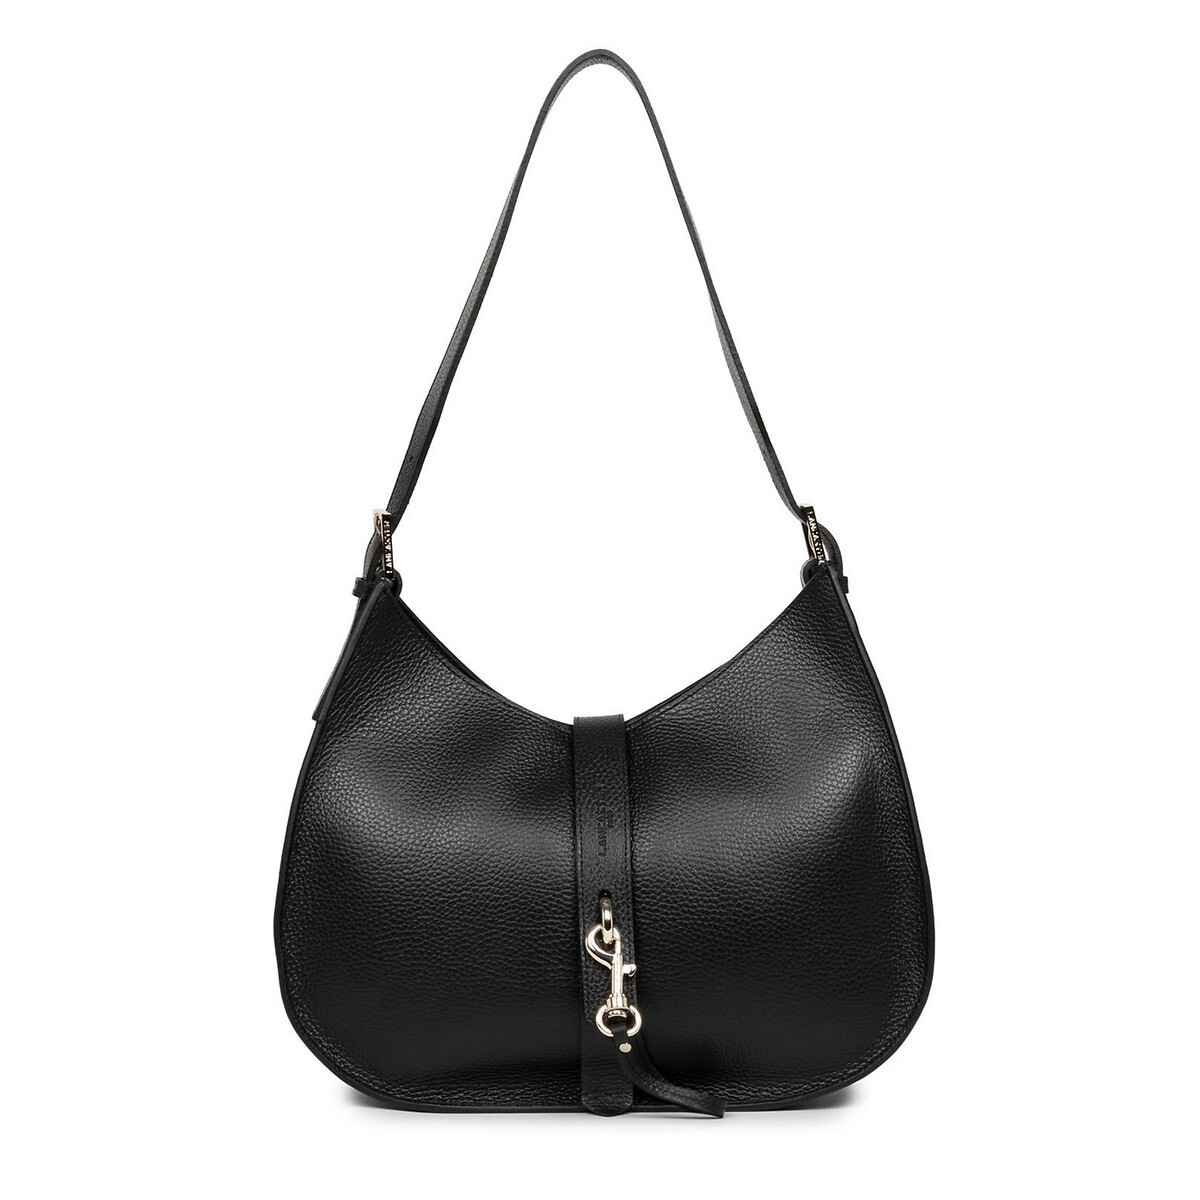 Сумка FOULONN DOUBLE единый размер черный сумка багет кожаная женская lmr 2035 8j